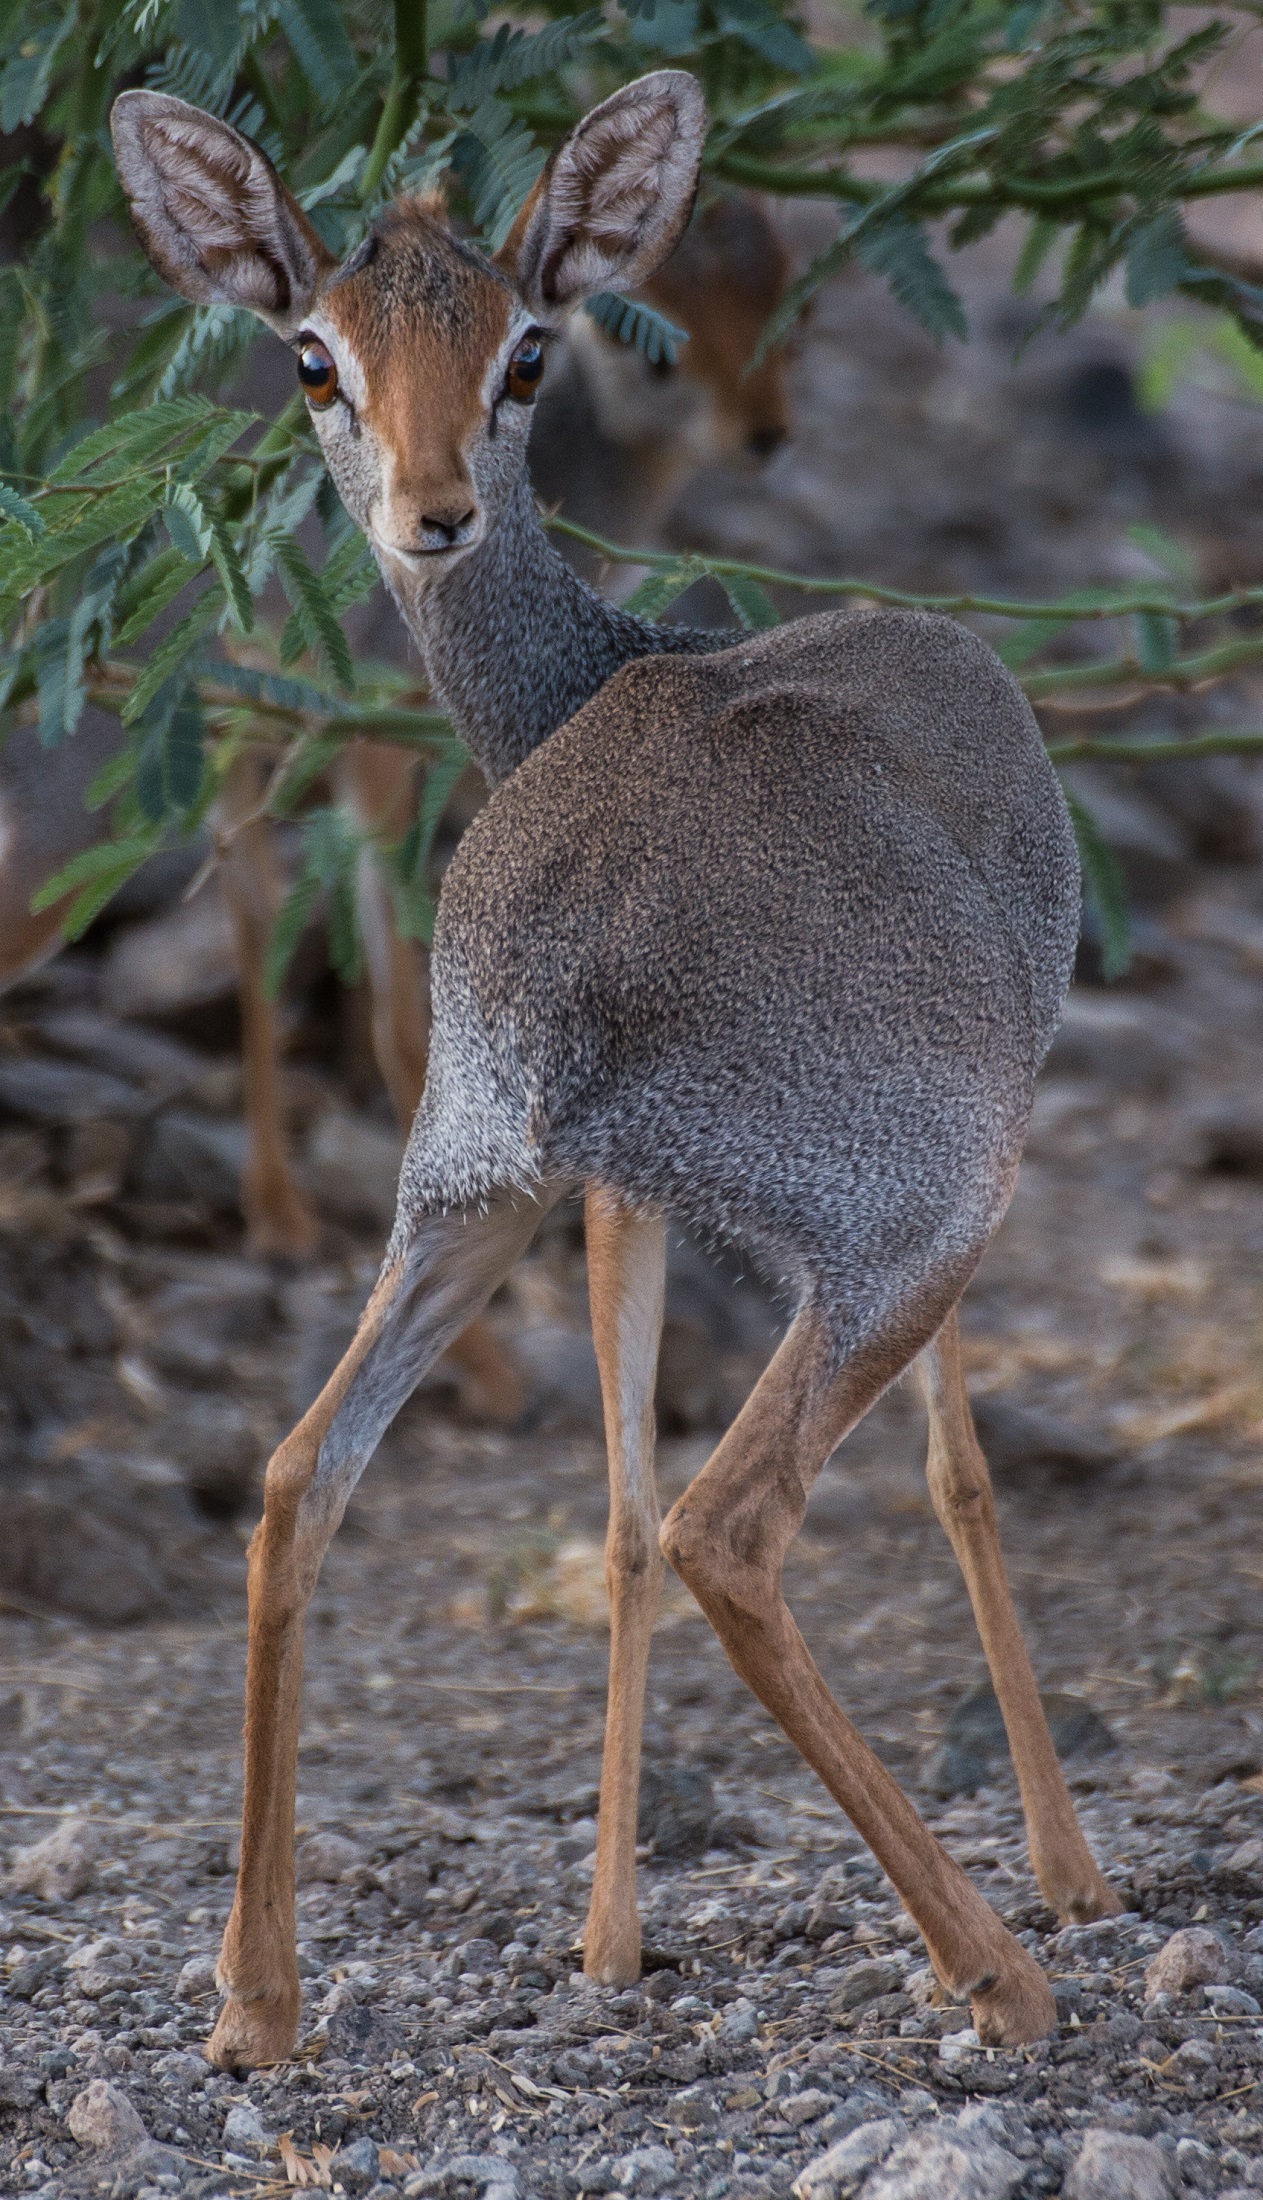 Wild Antelope, Animal, Antelope, Deer, Jungle, HQ Photo